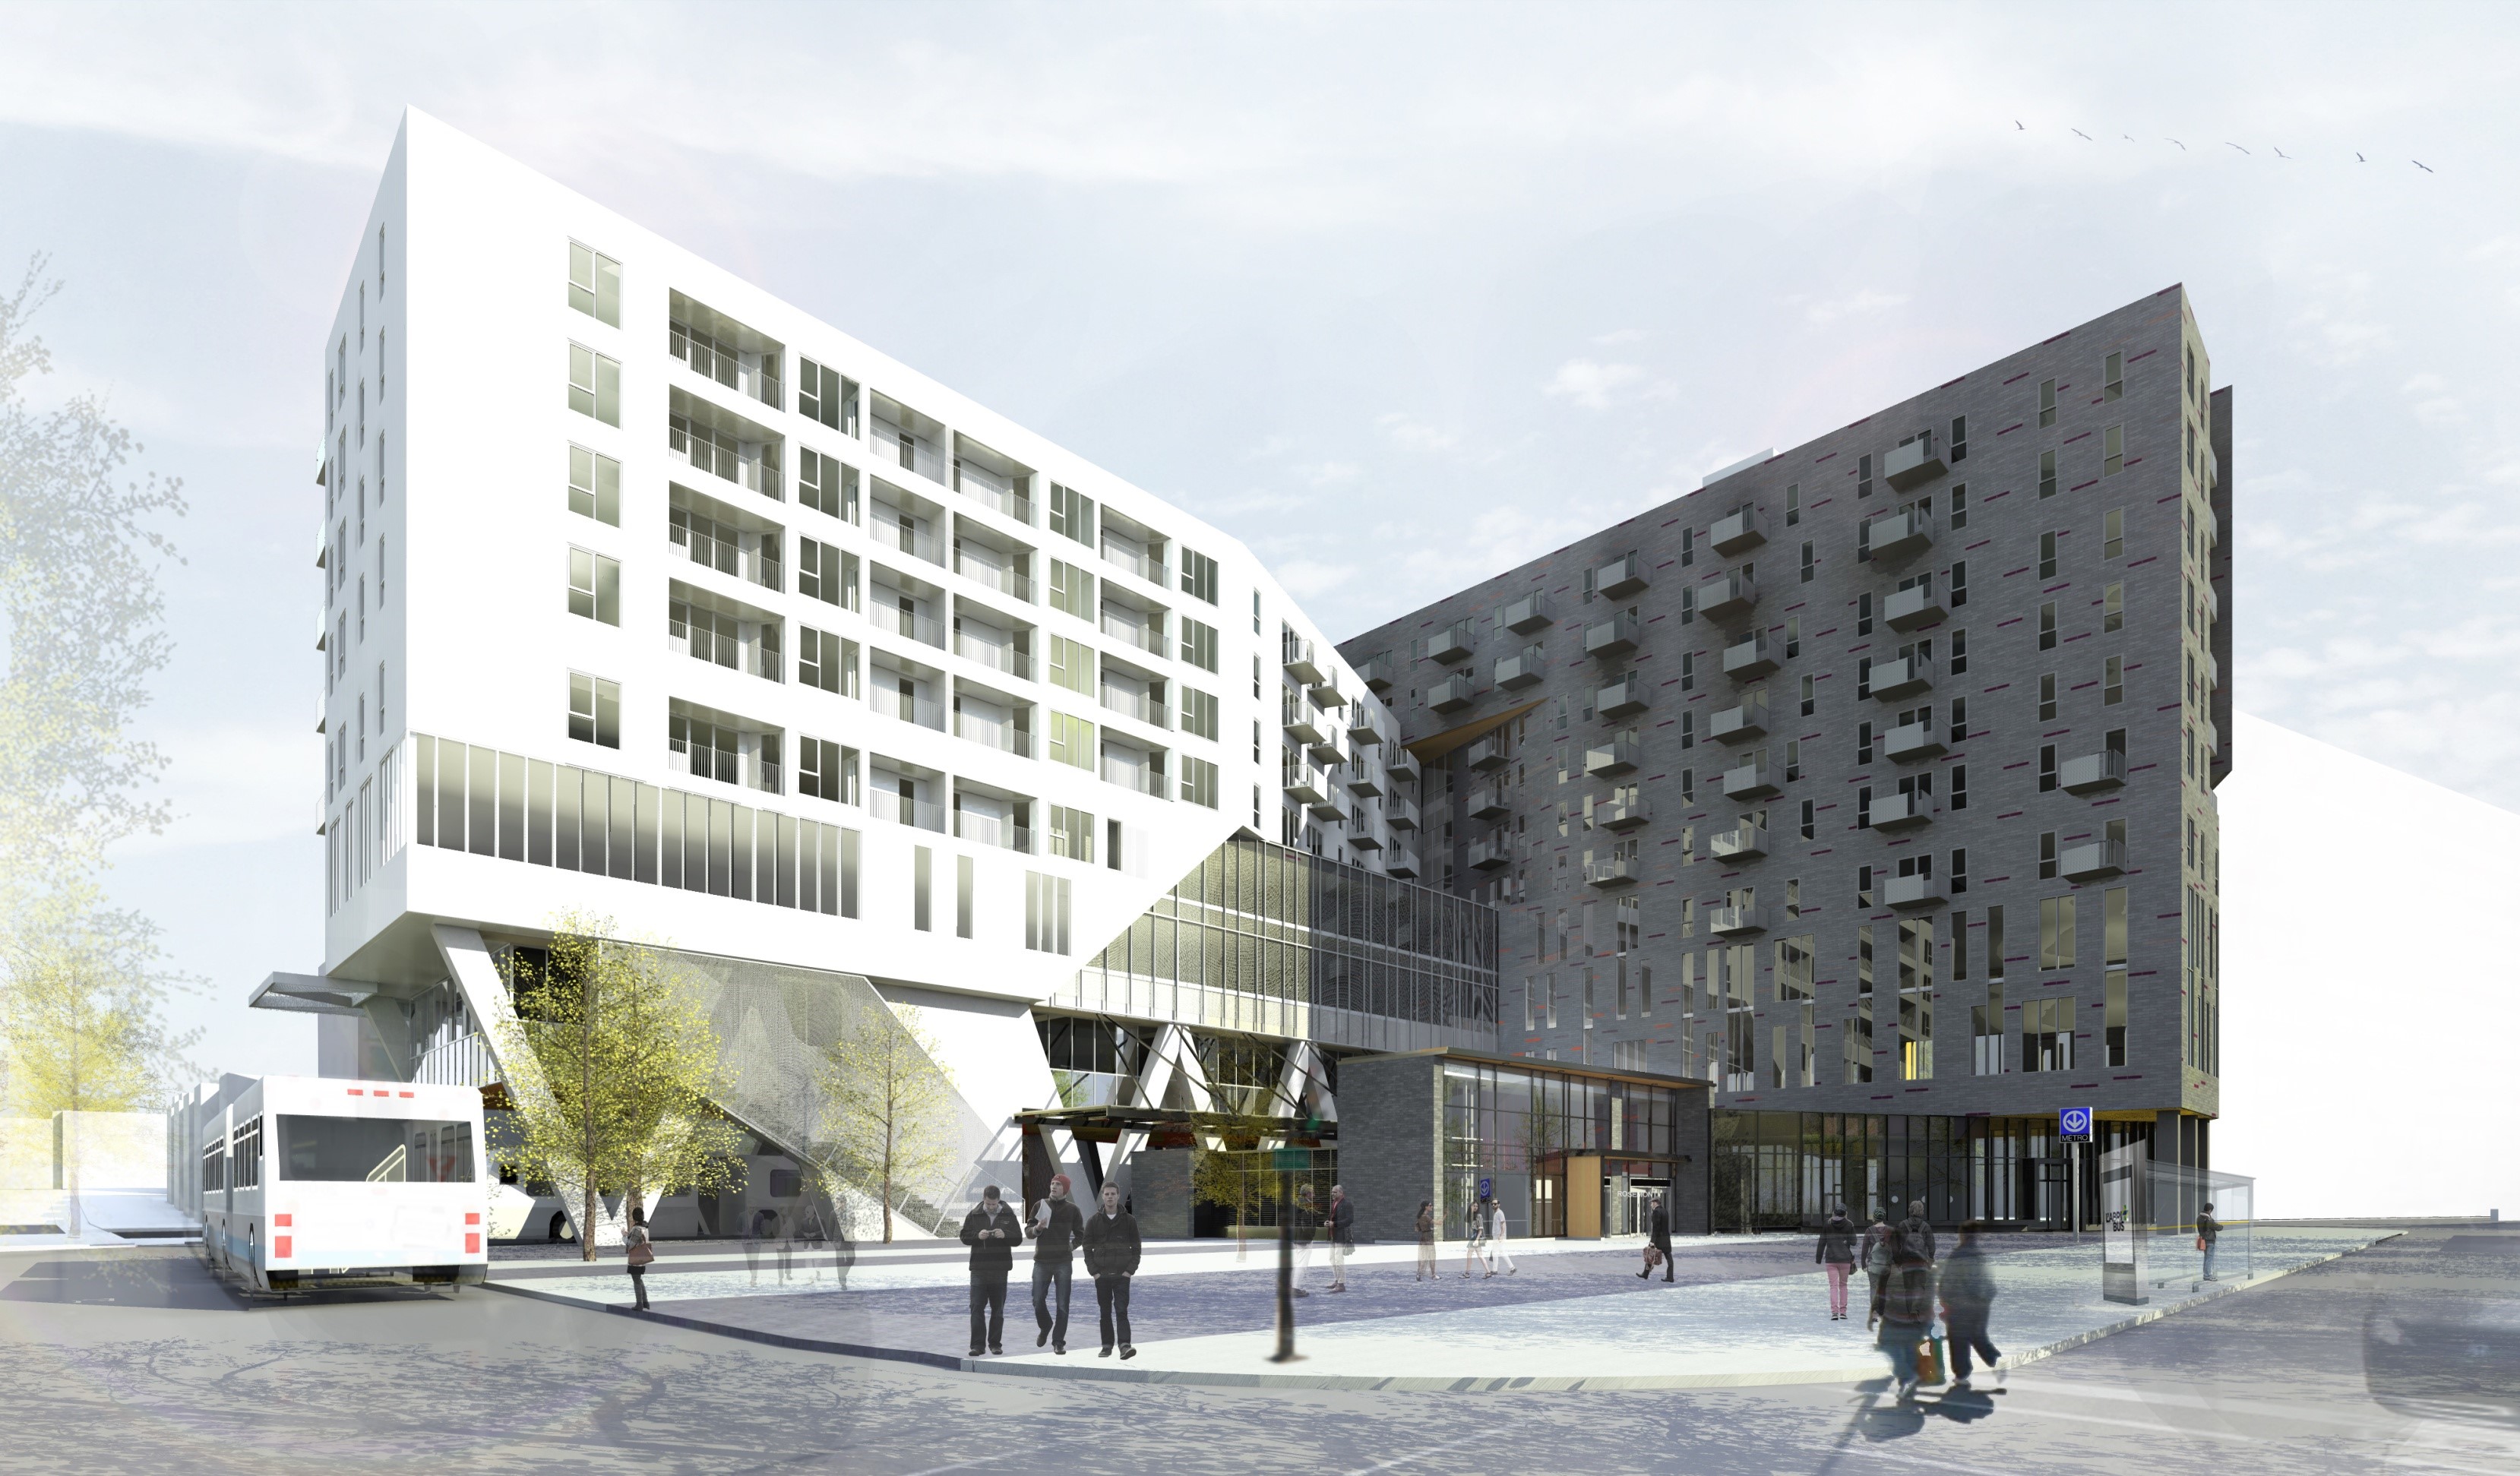 Une résidence pour aînés de près de 200 logements et des bureaux administratifs seront construits à l'angle des rues Saint-Denis et Rosemont.